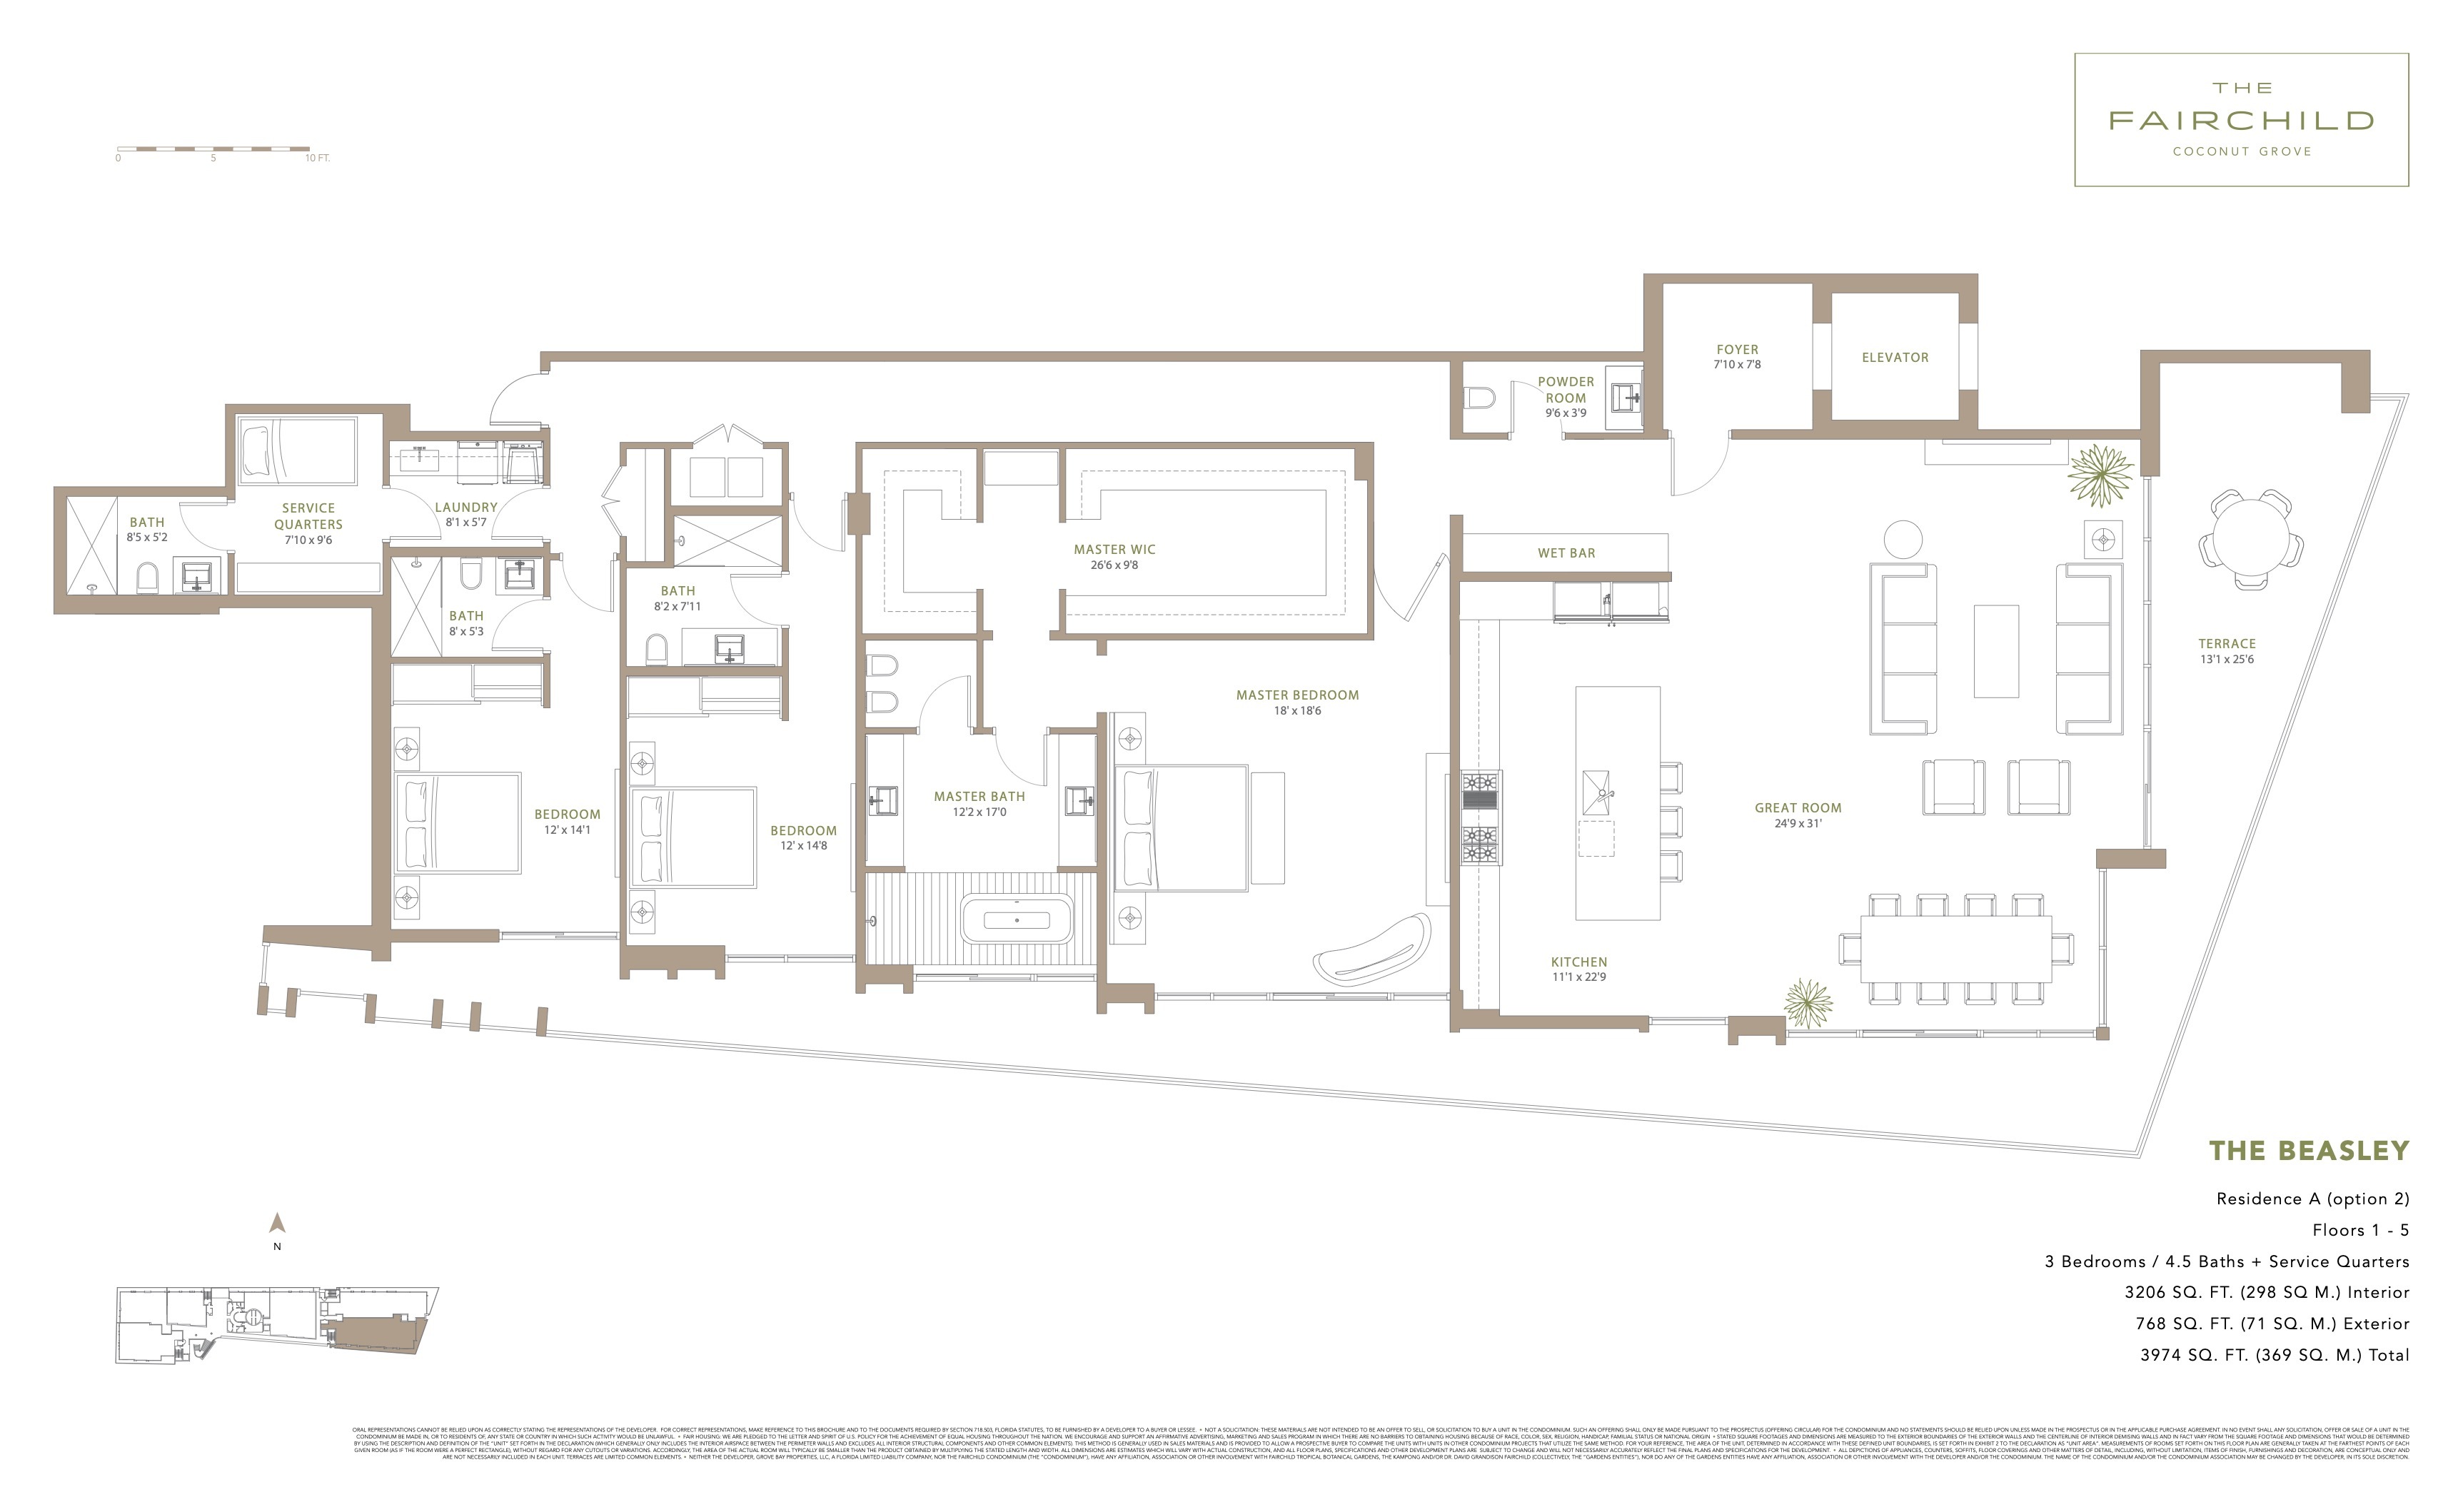 Floor Plan for The Fairchild Coconut Grove Floorplans, The Beasley Residence A